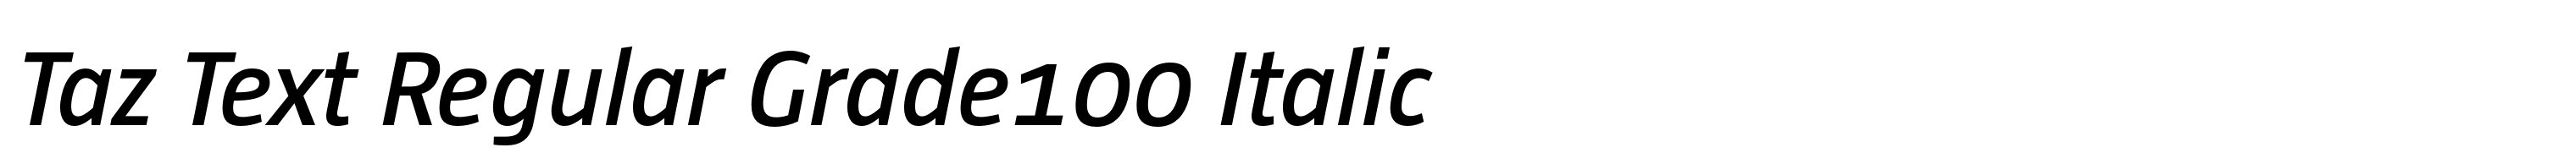 Taz Text Regular Grade100 Italic